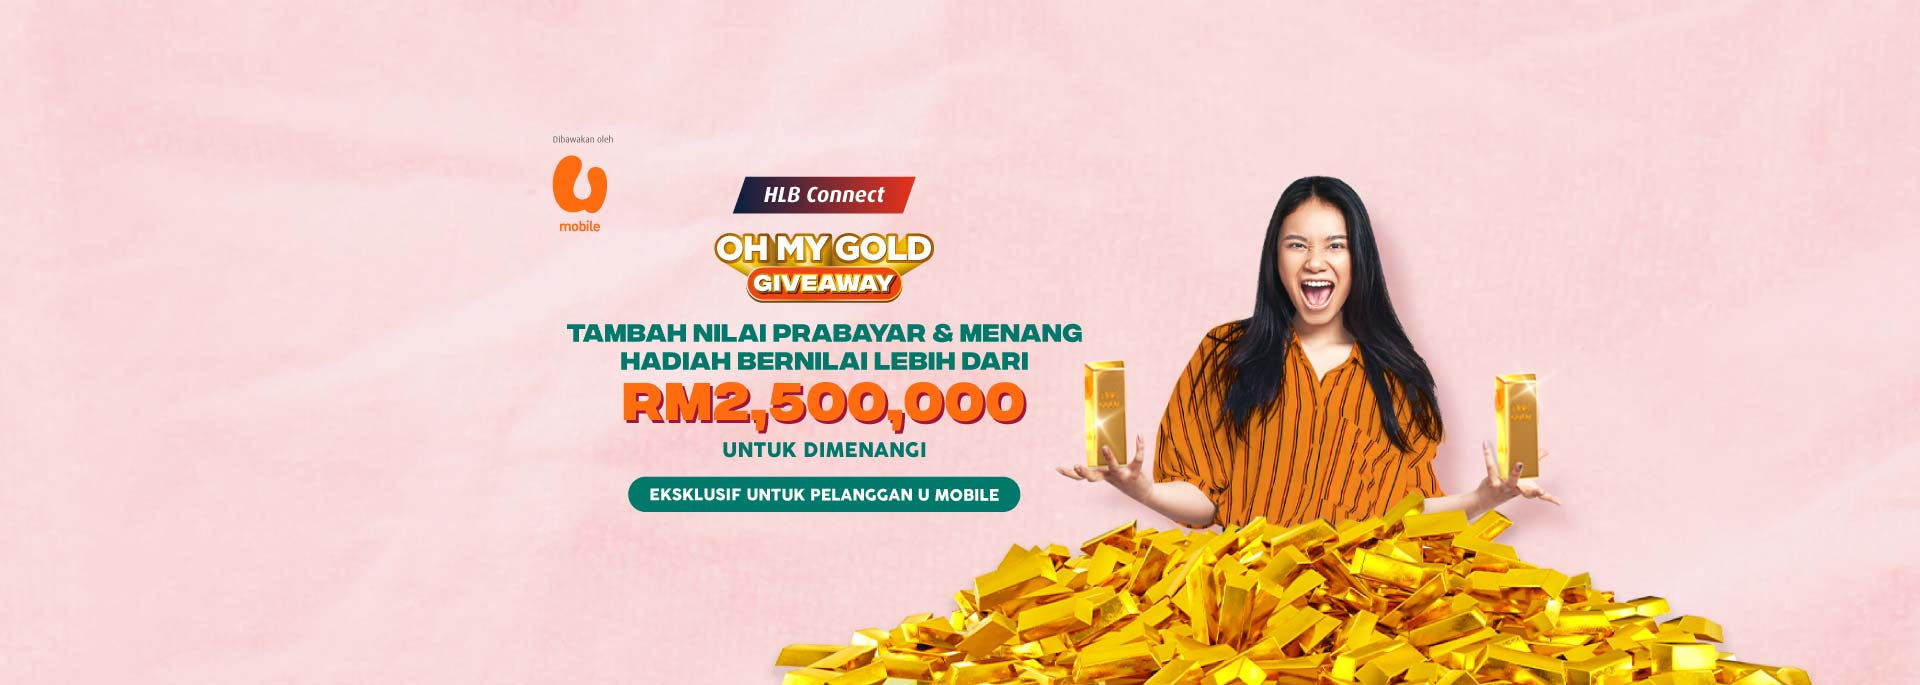 Hadiah Lebih Dari RM2,500,000 Untuk Dimenangi!